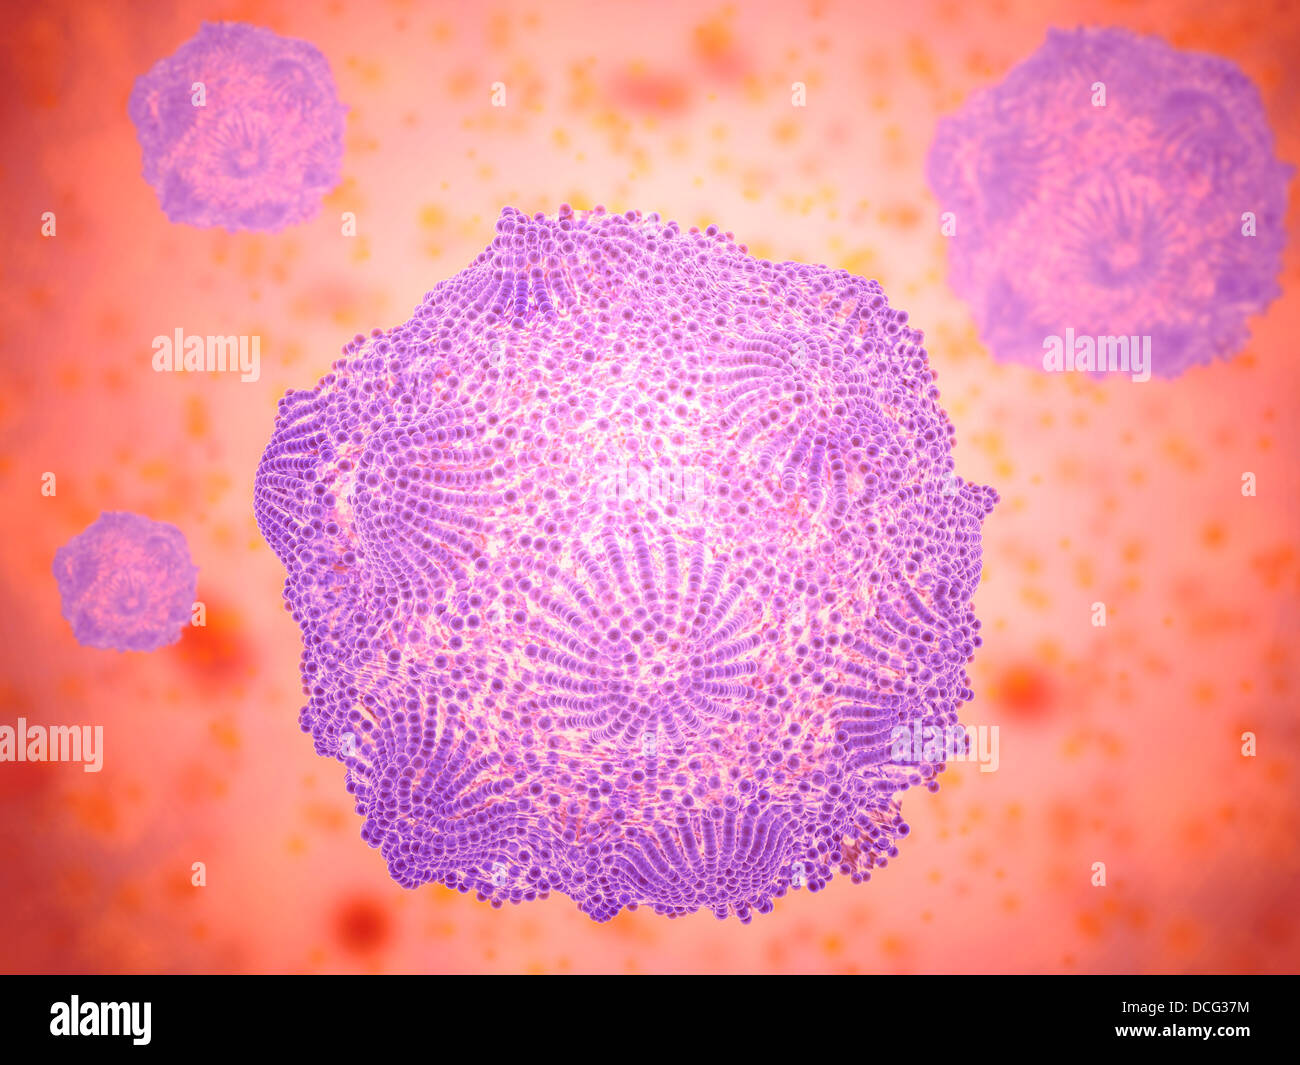 Microscopic view of Canine Parvovirus Stock Photo